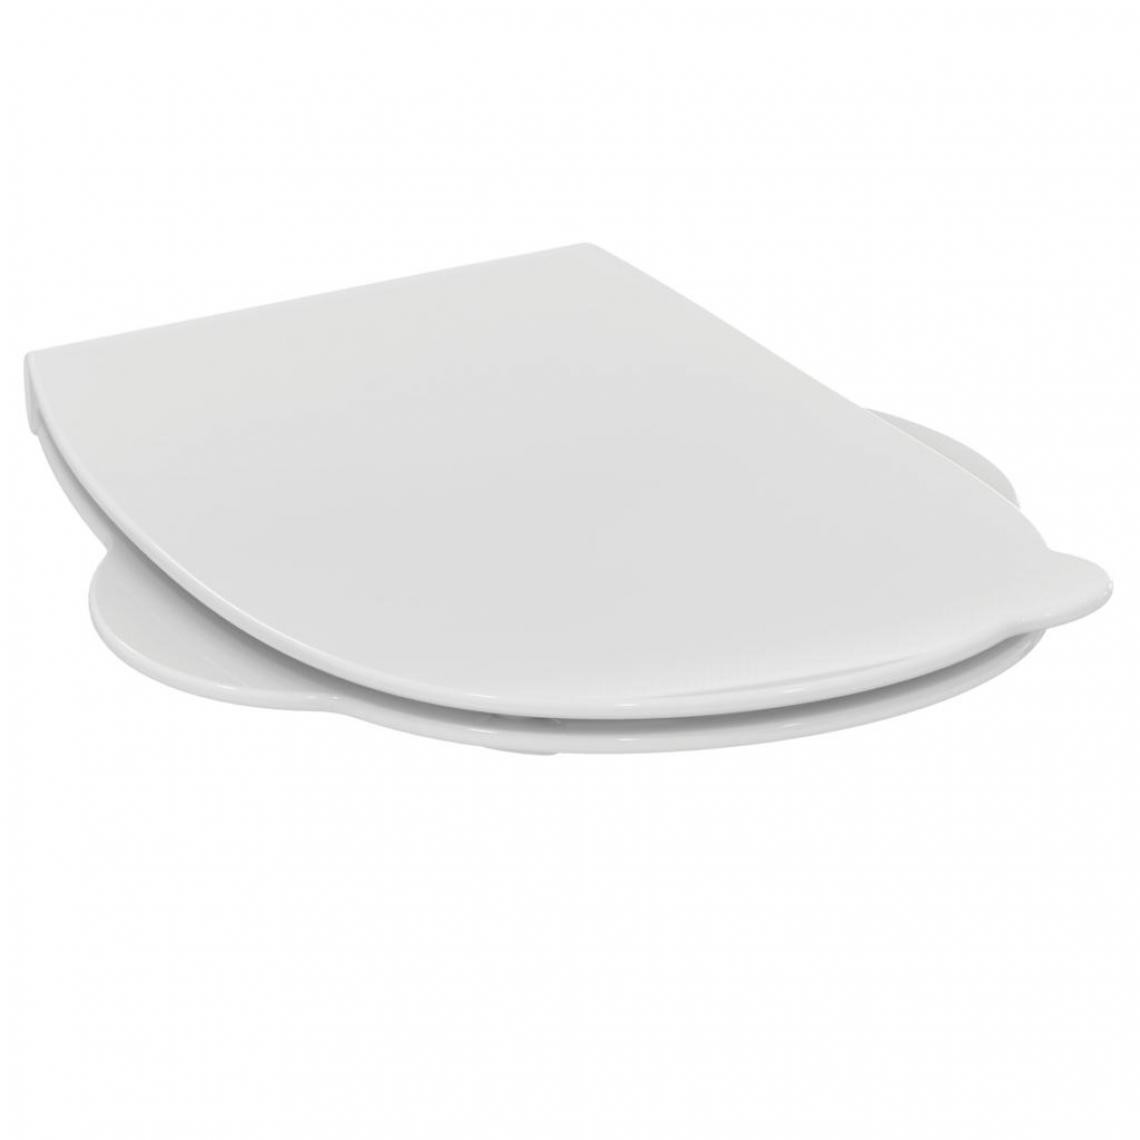 Ideal Standard - Ideal Standard - Assise et abattant pour cuvette indépendante blanc - Contour 21 - Abattant WC